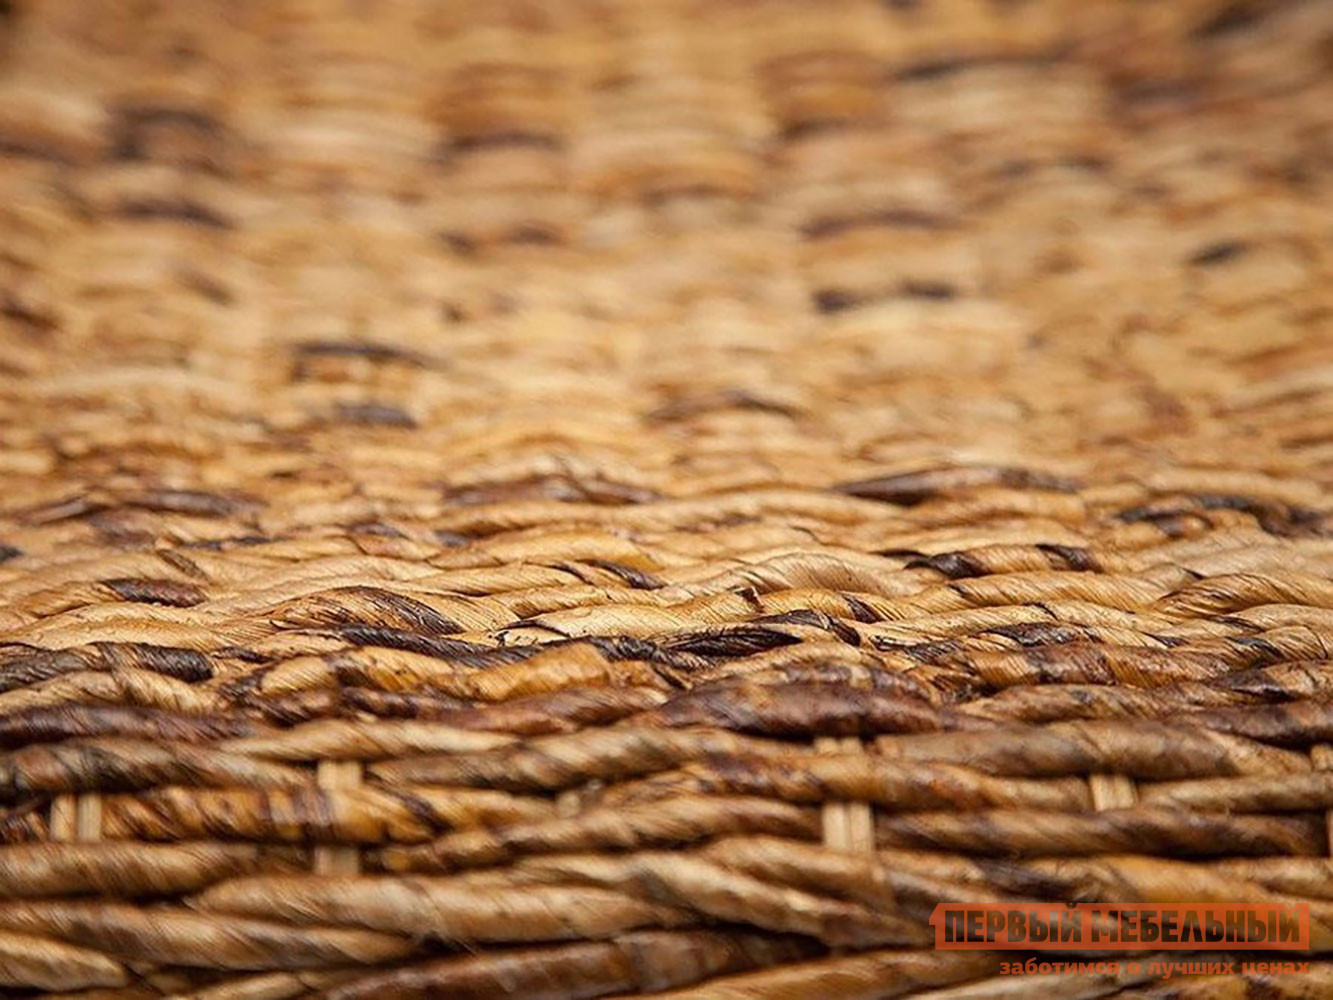 Комплект плетеной мебели  Мандалино 2 Грецкий орех / Банановые листья от Первый Мебельный